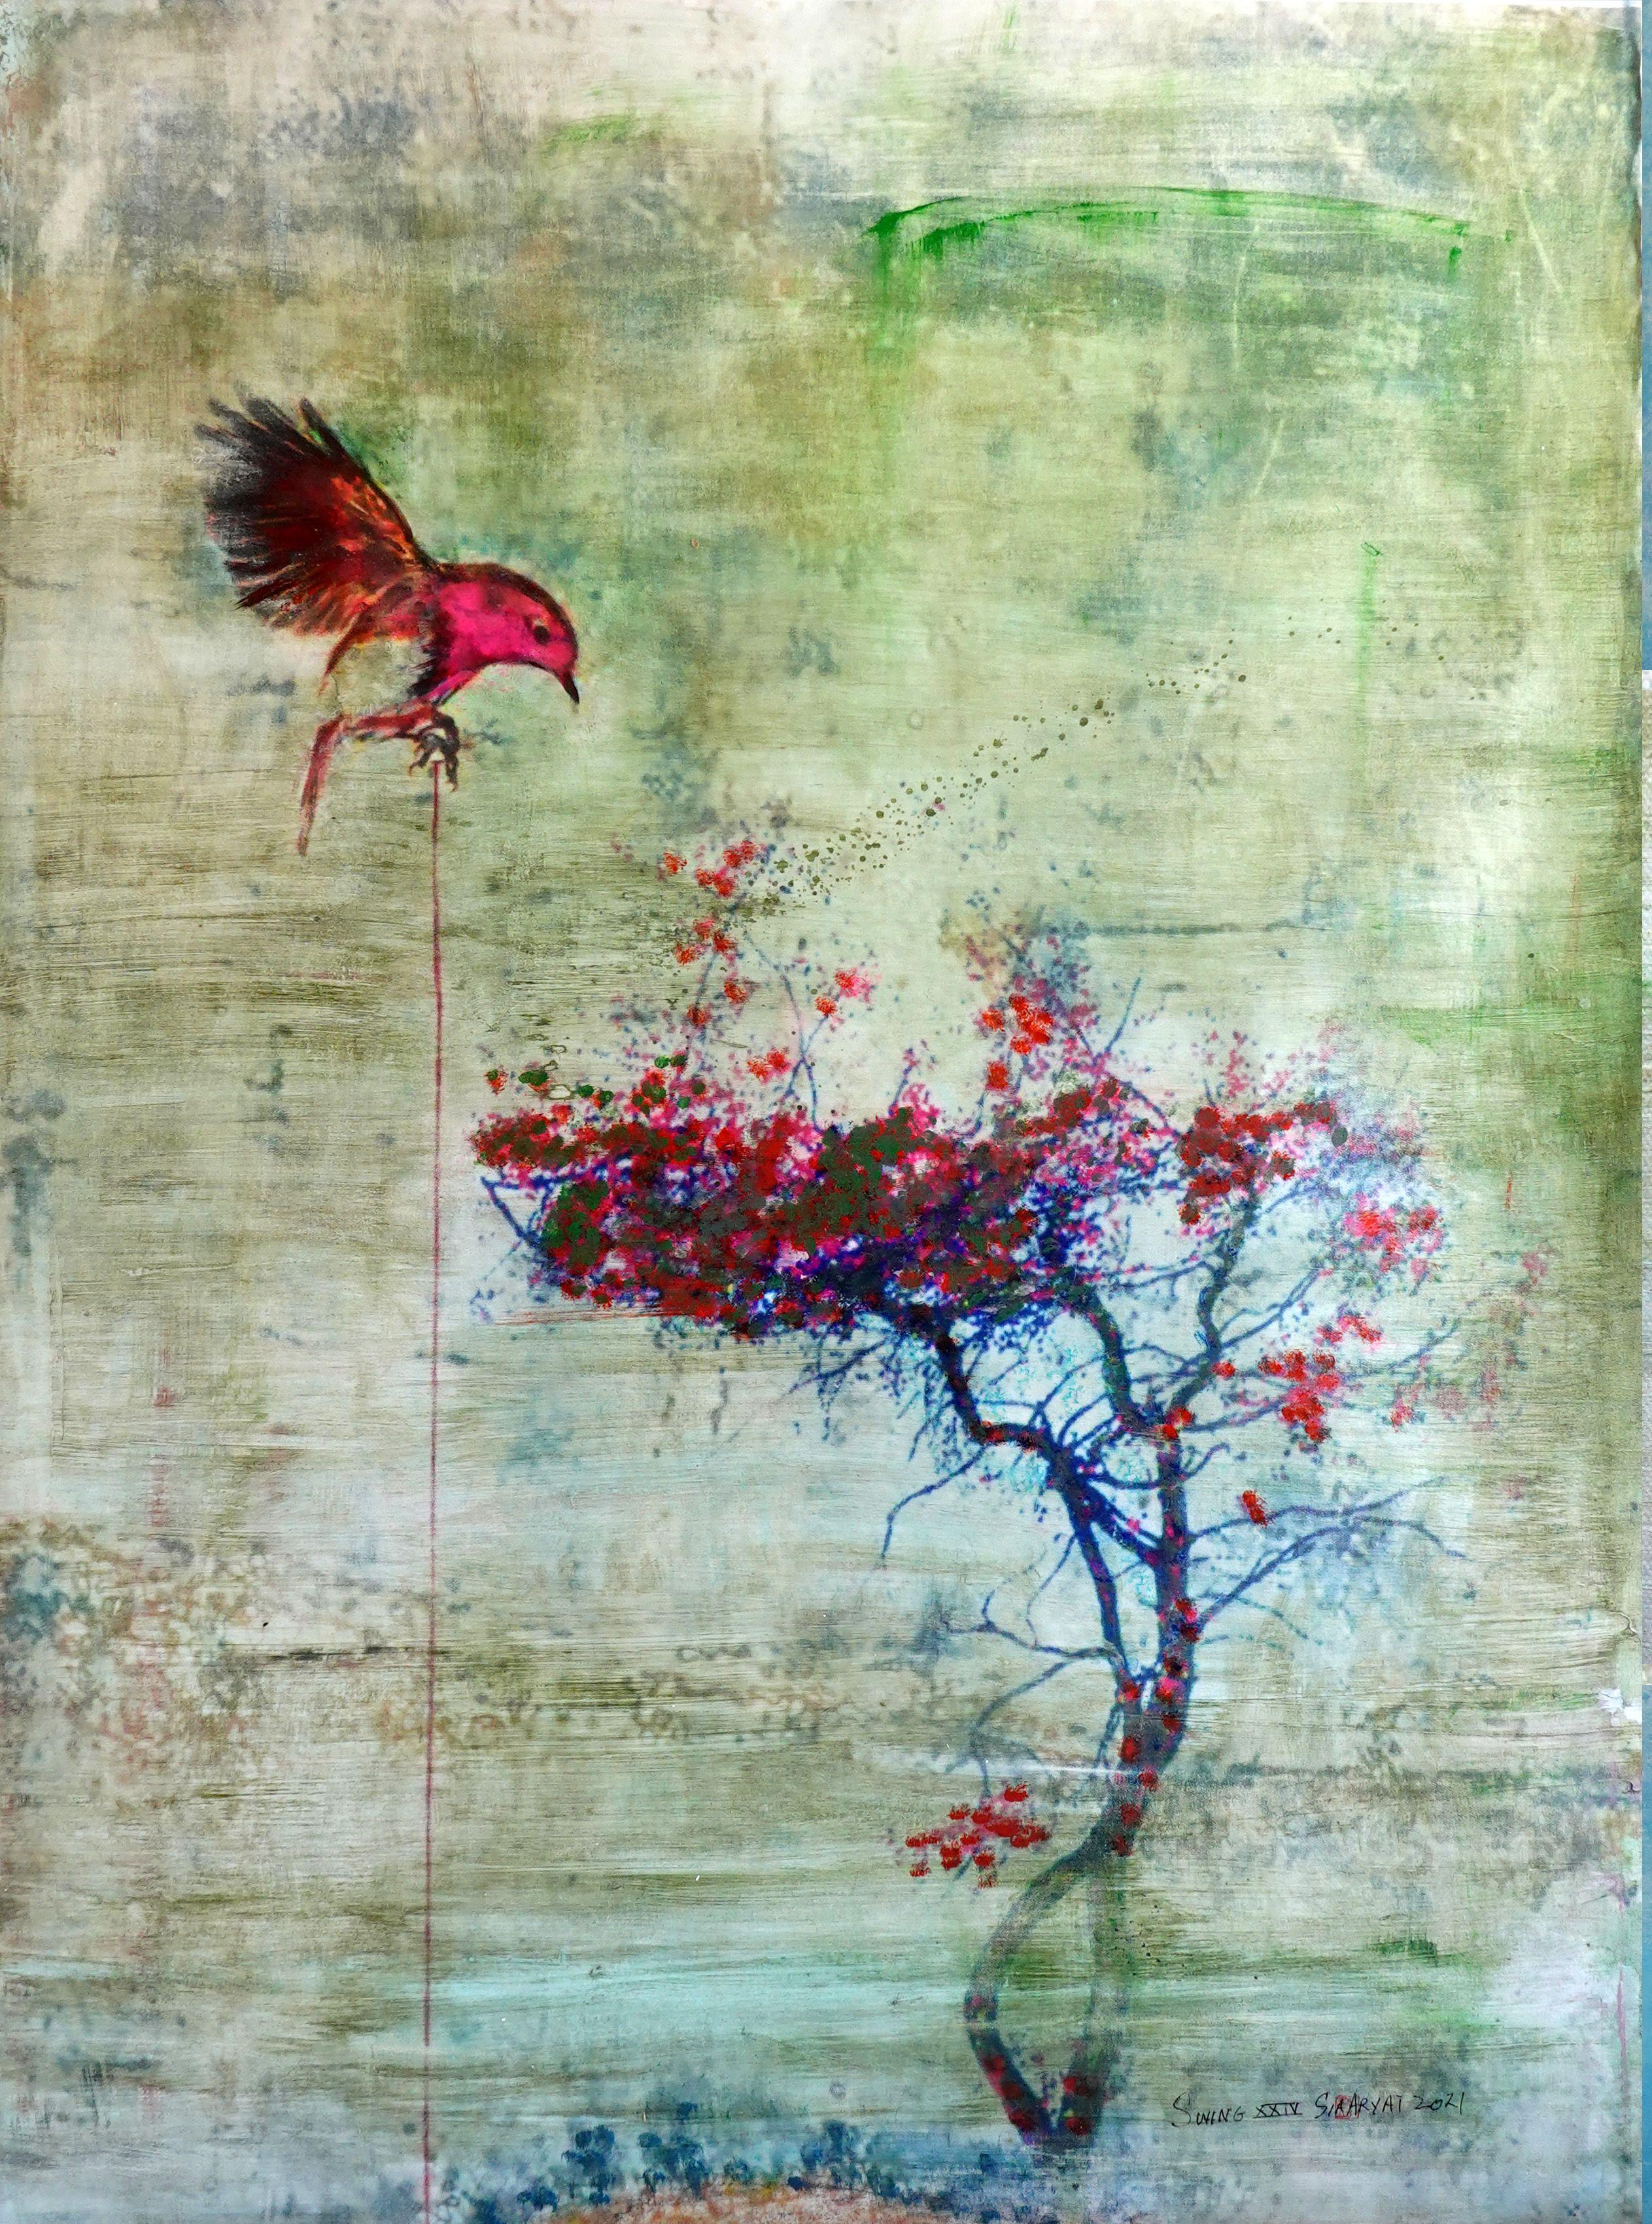 Swing XXIV  Abstract surreal bird  nesting, Mixed Media on Canvas - Mixed Media Art by Sia Aryai